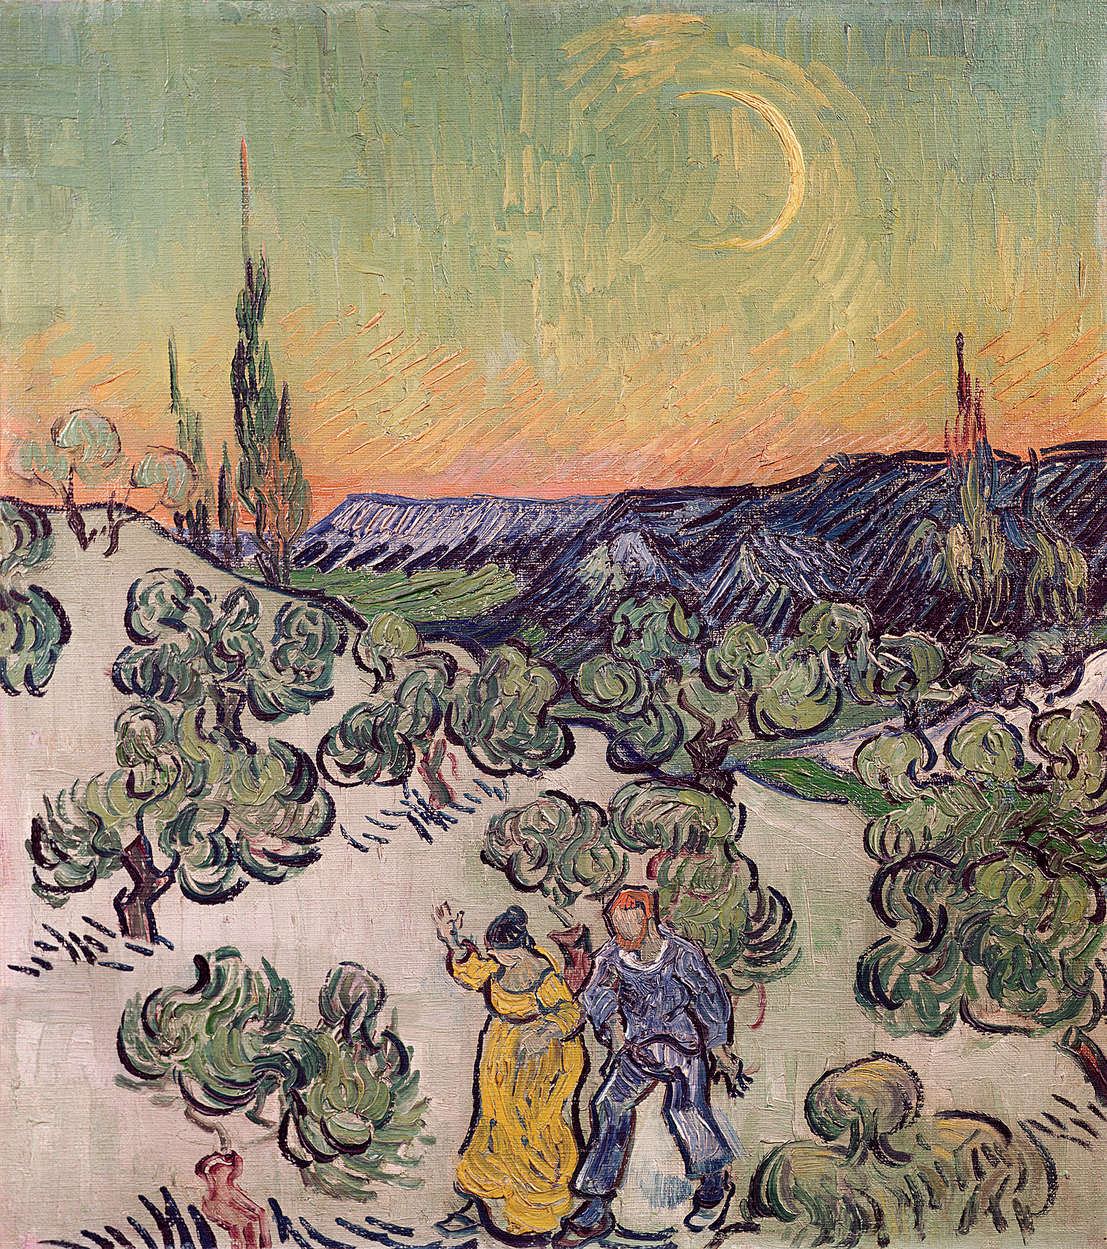             Fotomurali "Paesaggio con fabbriche al chiaro di luna" di Vincent van Gogh
        